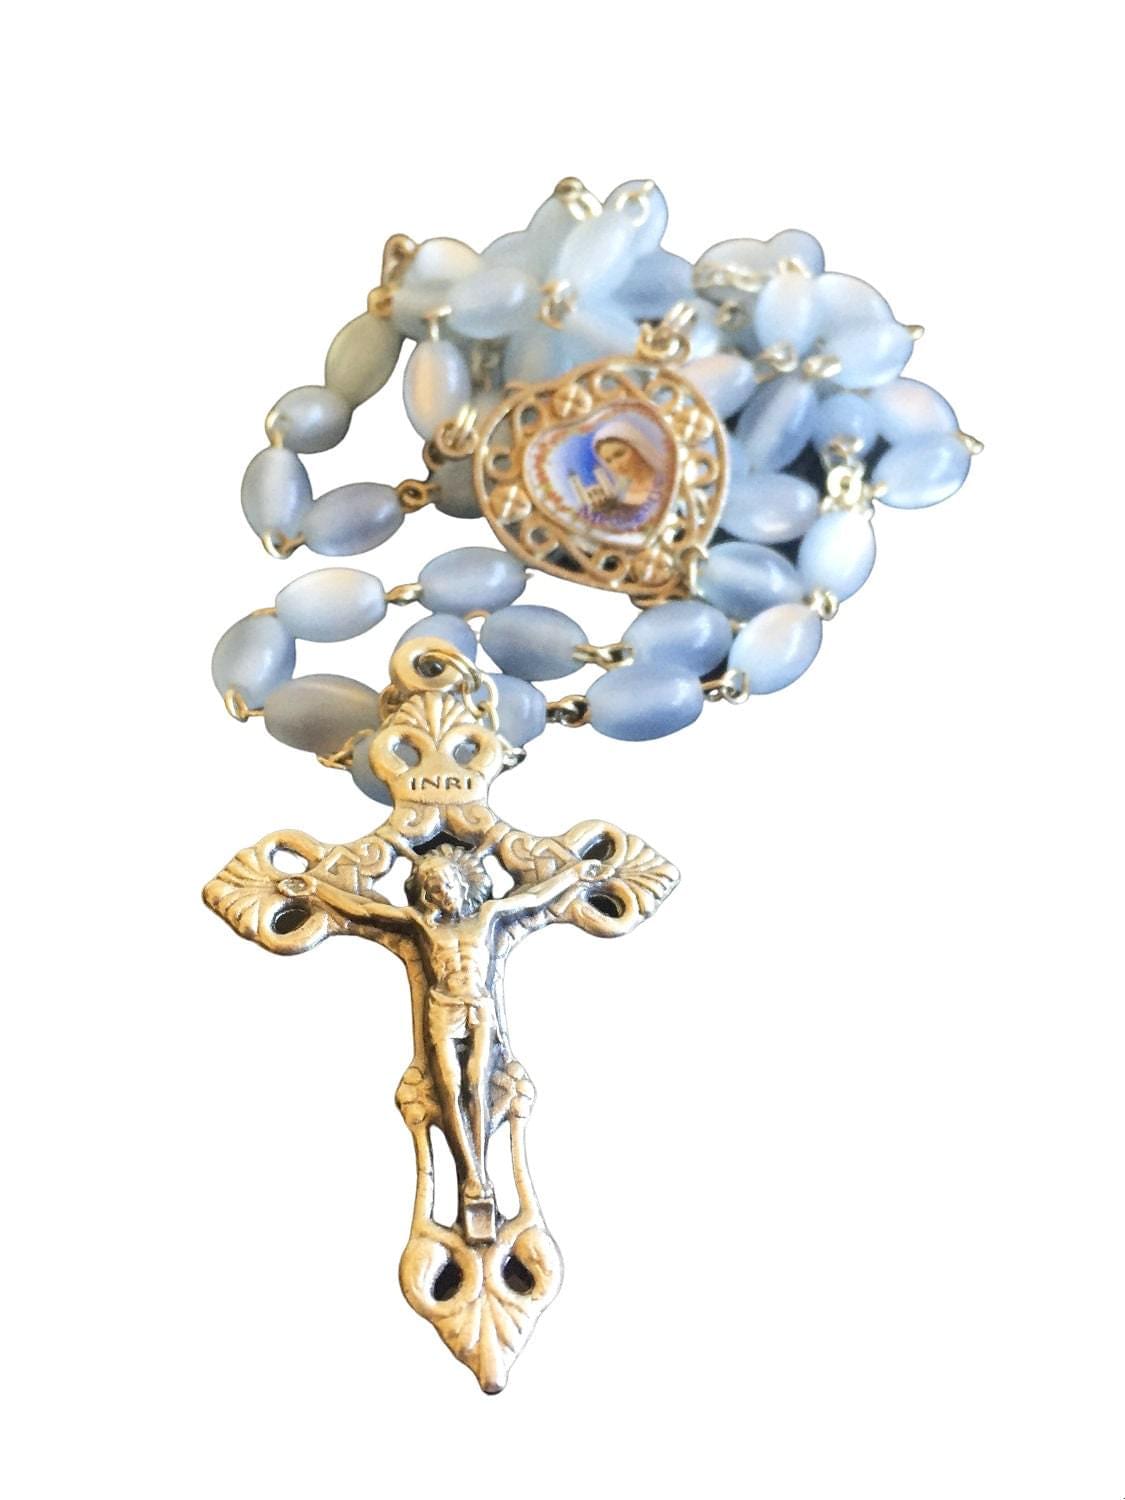 catholic rosary mary